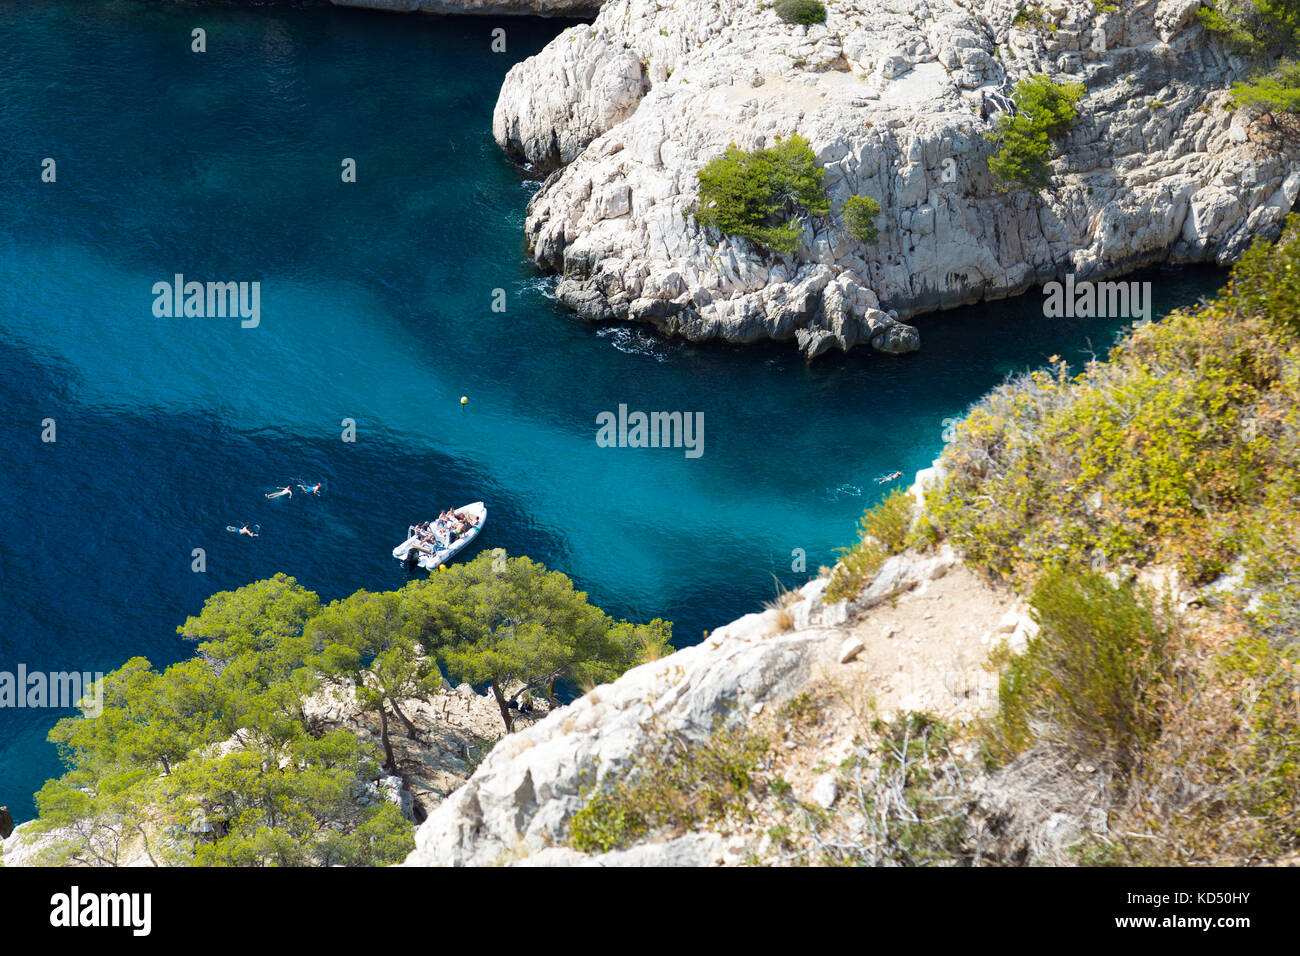 Calanque de Sugiton, Boot in einer Bucht, Menschen schwimmen in azurblauem Meerwasser, Calanques Nationalpark, Frankreich Stockfoto